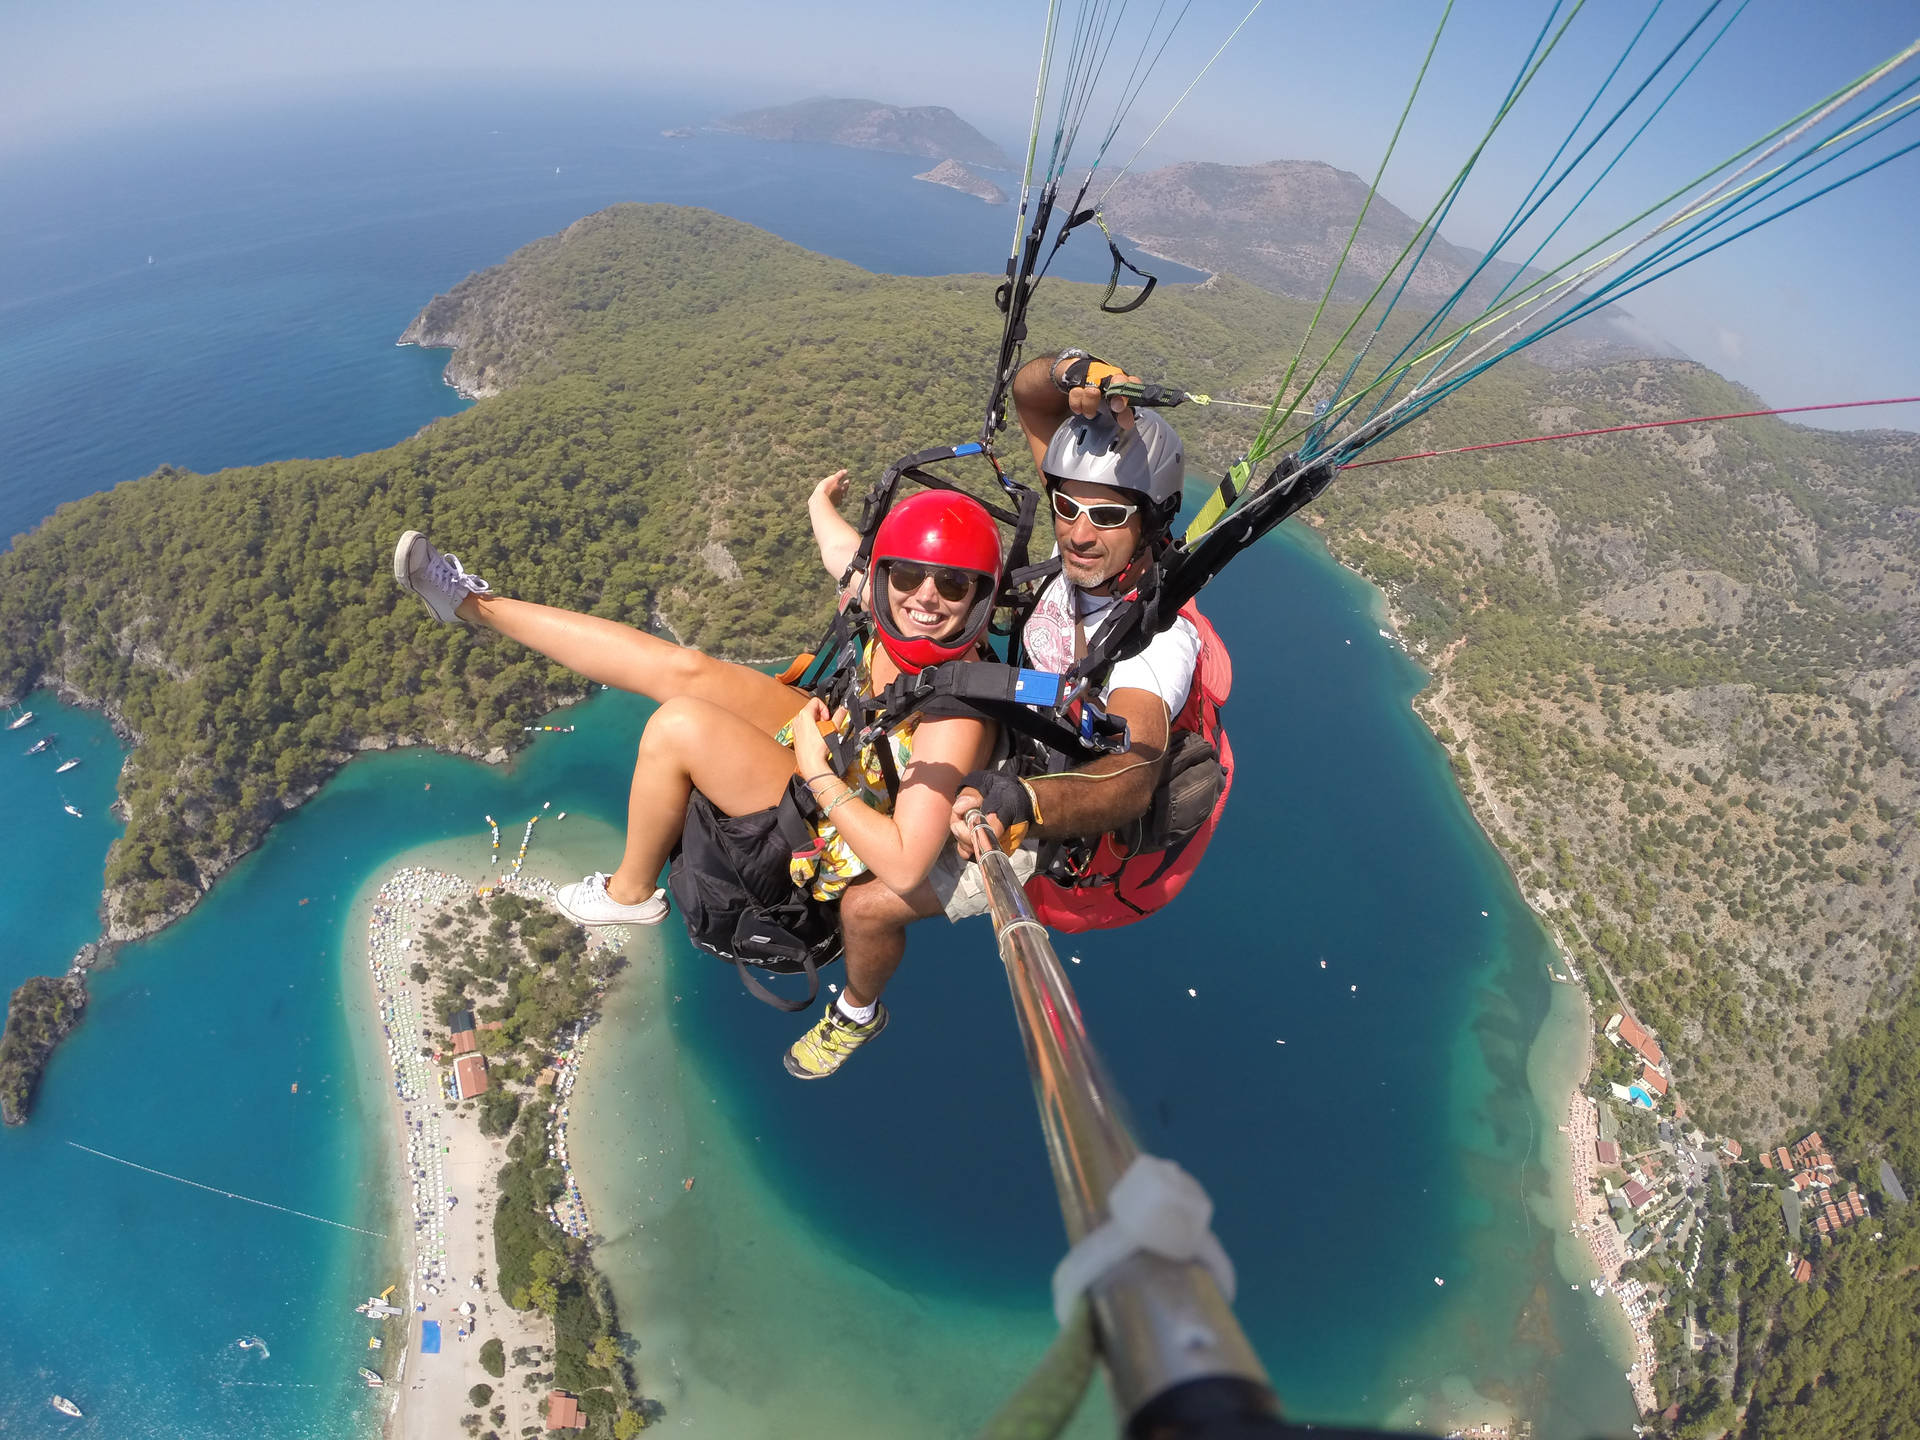 Paraglidingtandem Couples Selfie - Paragliding Tandem Par Självporträtt. Wallpaper